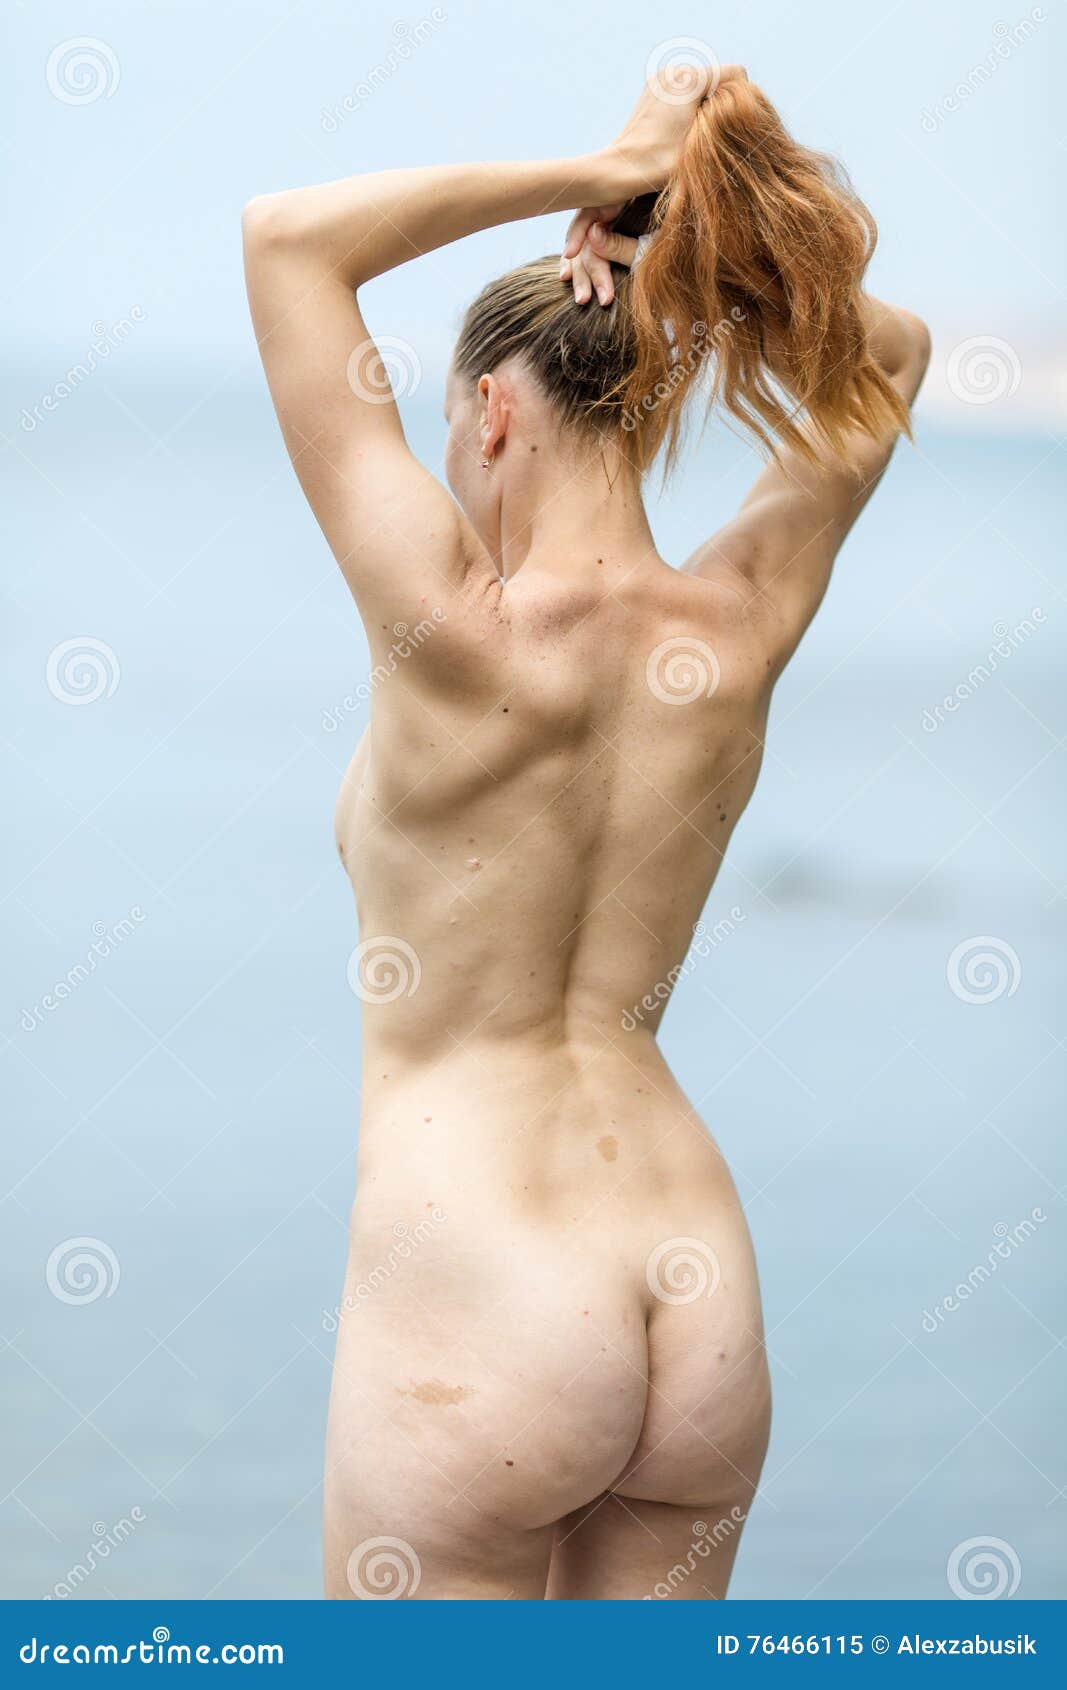 Rear view nude women